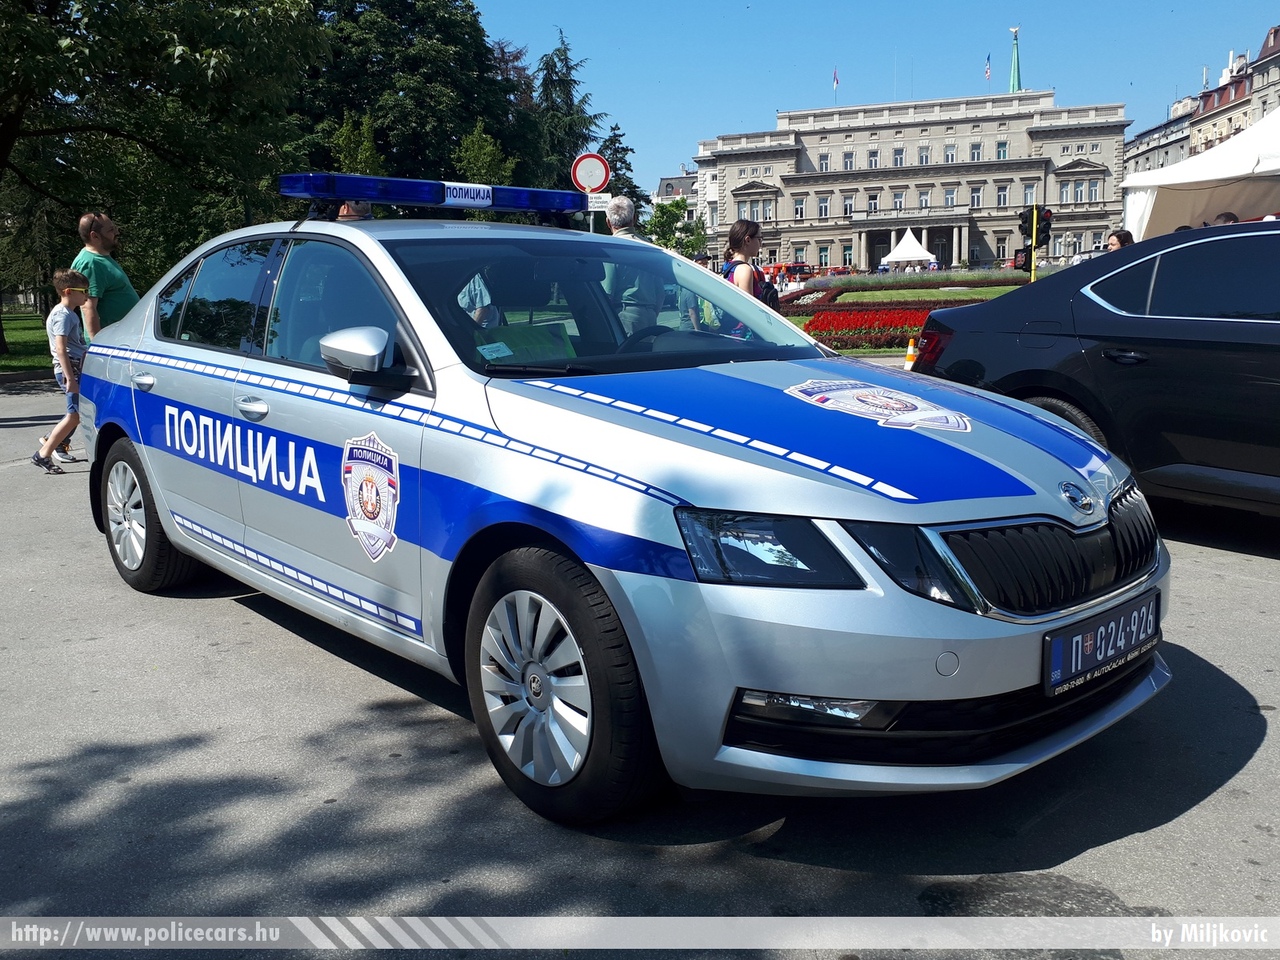 Skoda Octavia III facelift, fotó: Miljkovic
Keywords: szerb Szerbia rendőr rendőrautó rendőrség Serbia serbian police policecar